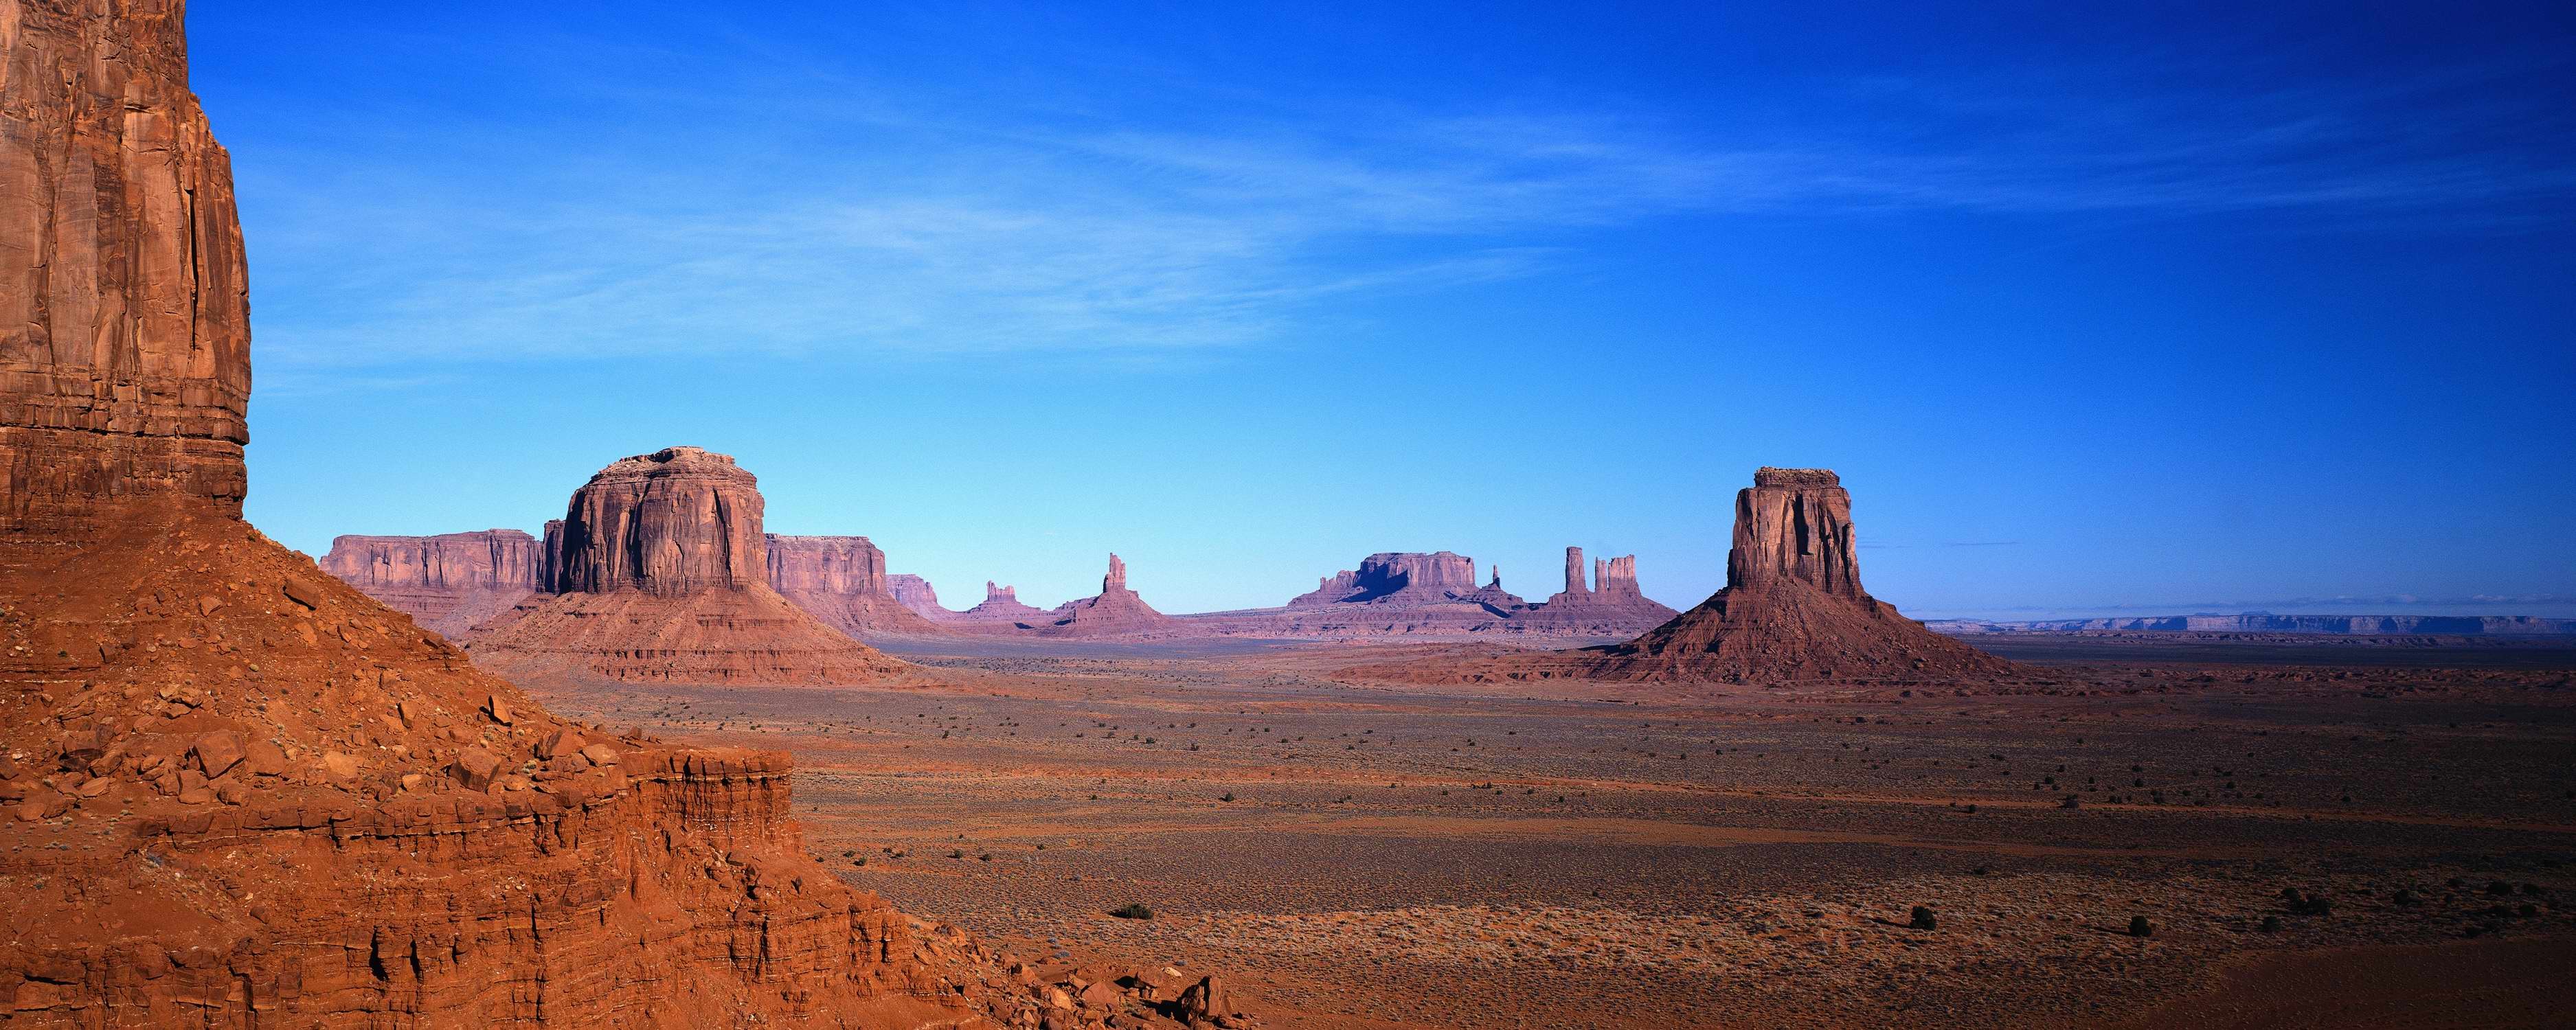 3750x1500 Wallpaper arizona USA mountains desert Monument Valley Monument 